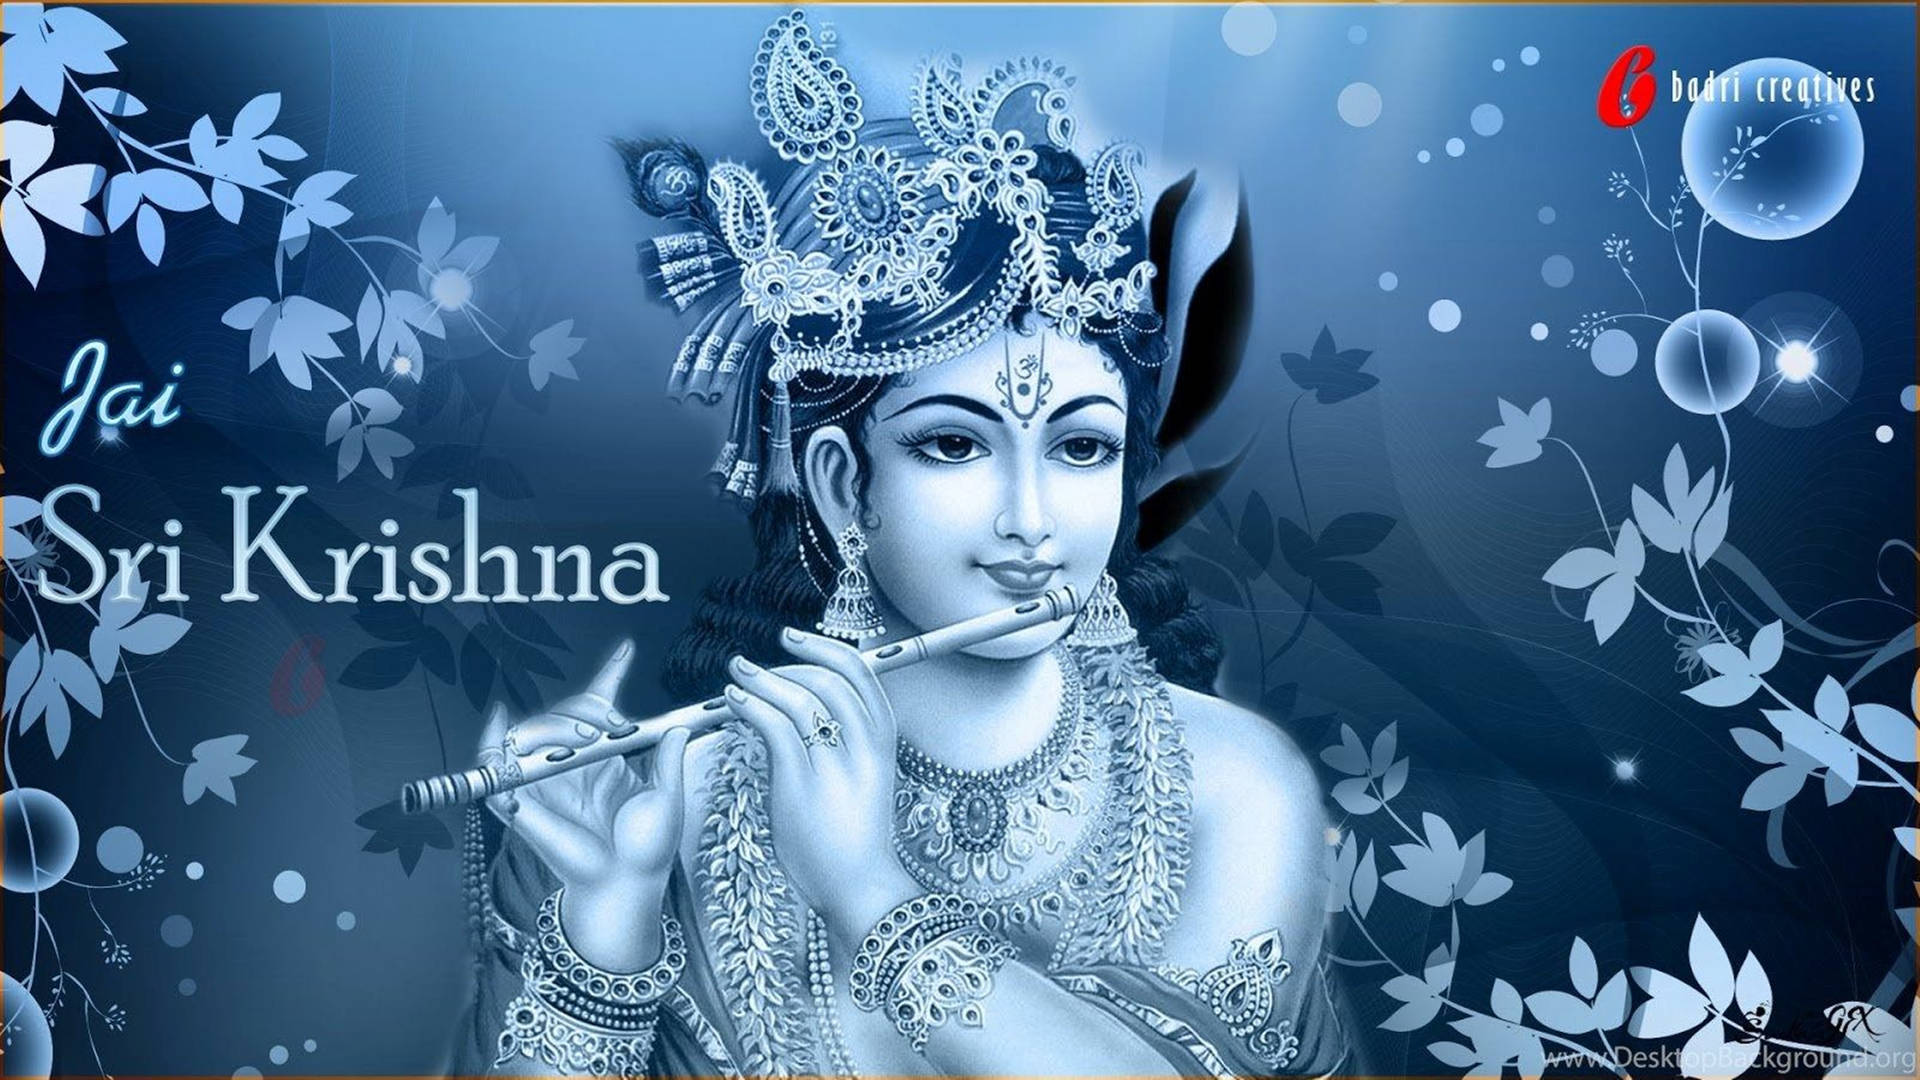 Lord Krishna Wallpaper